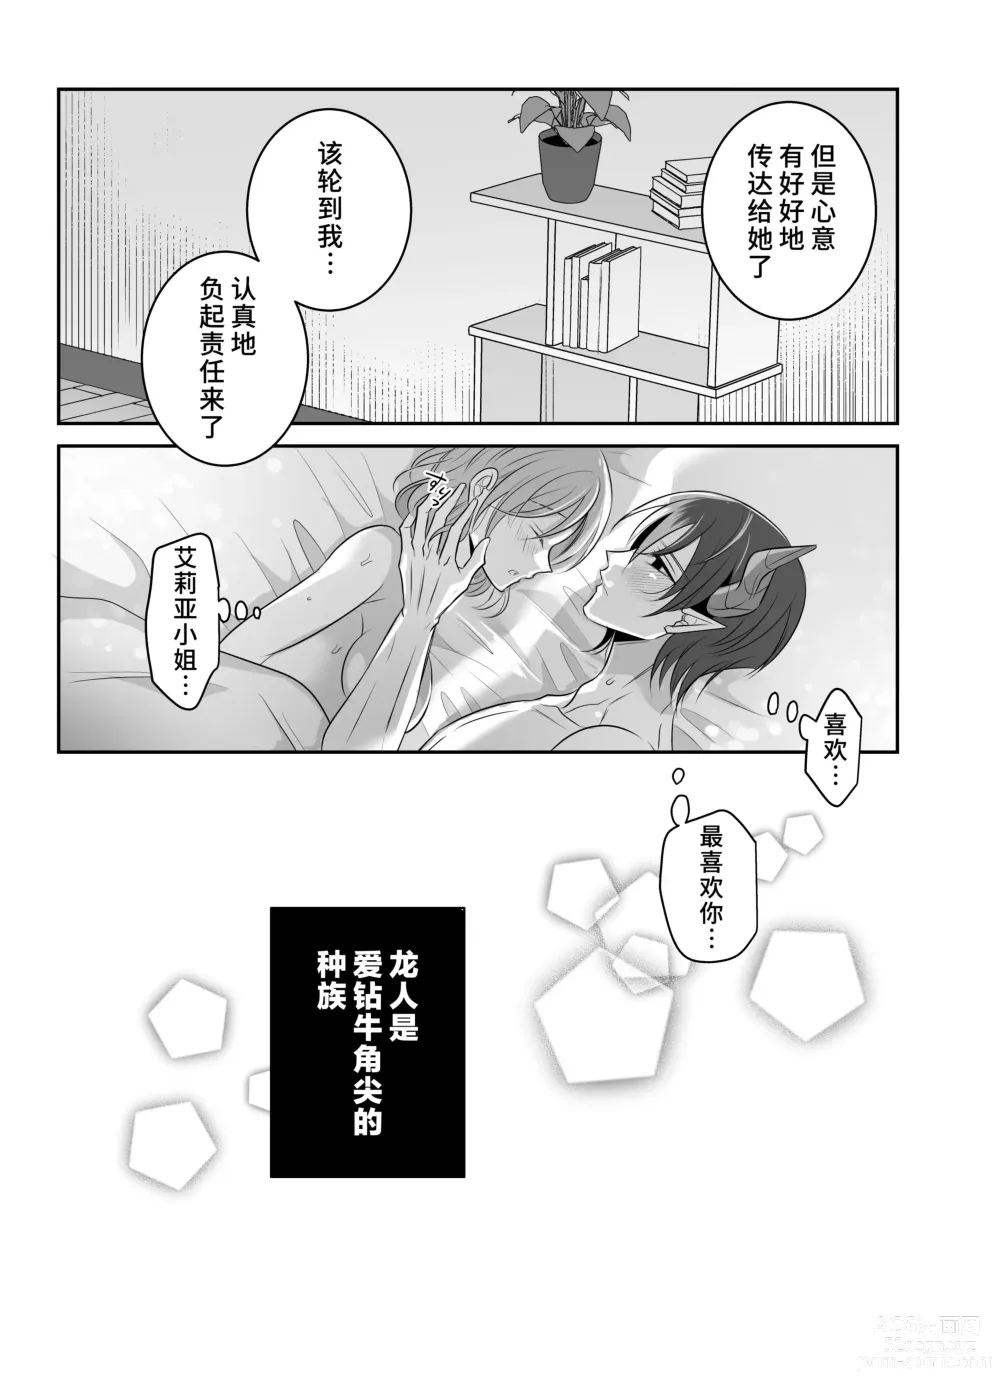 Page 50 of doujinshi 关于我的龙人同事发情期太过骇人这件事